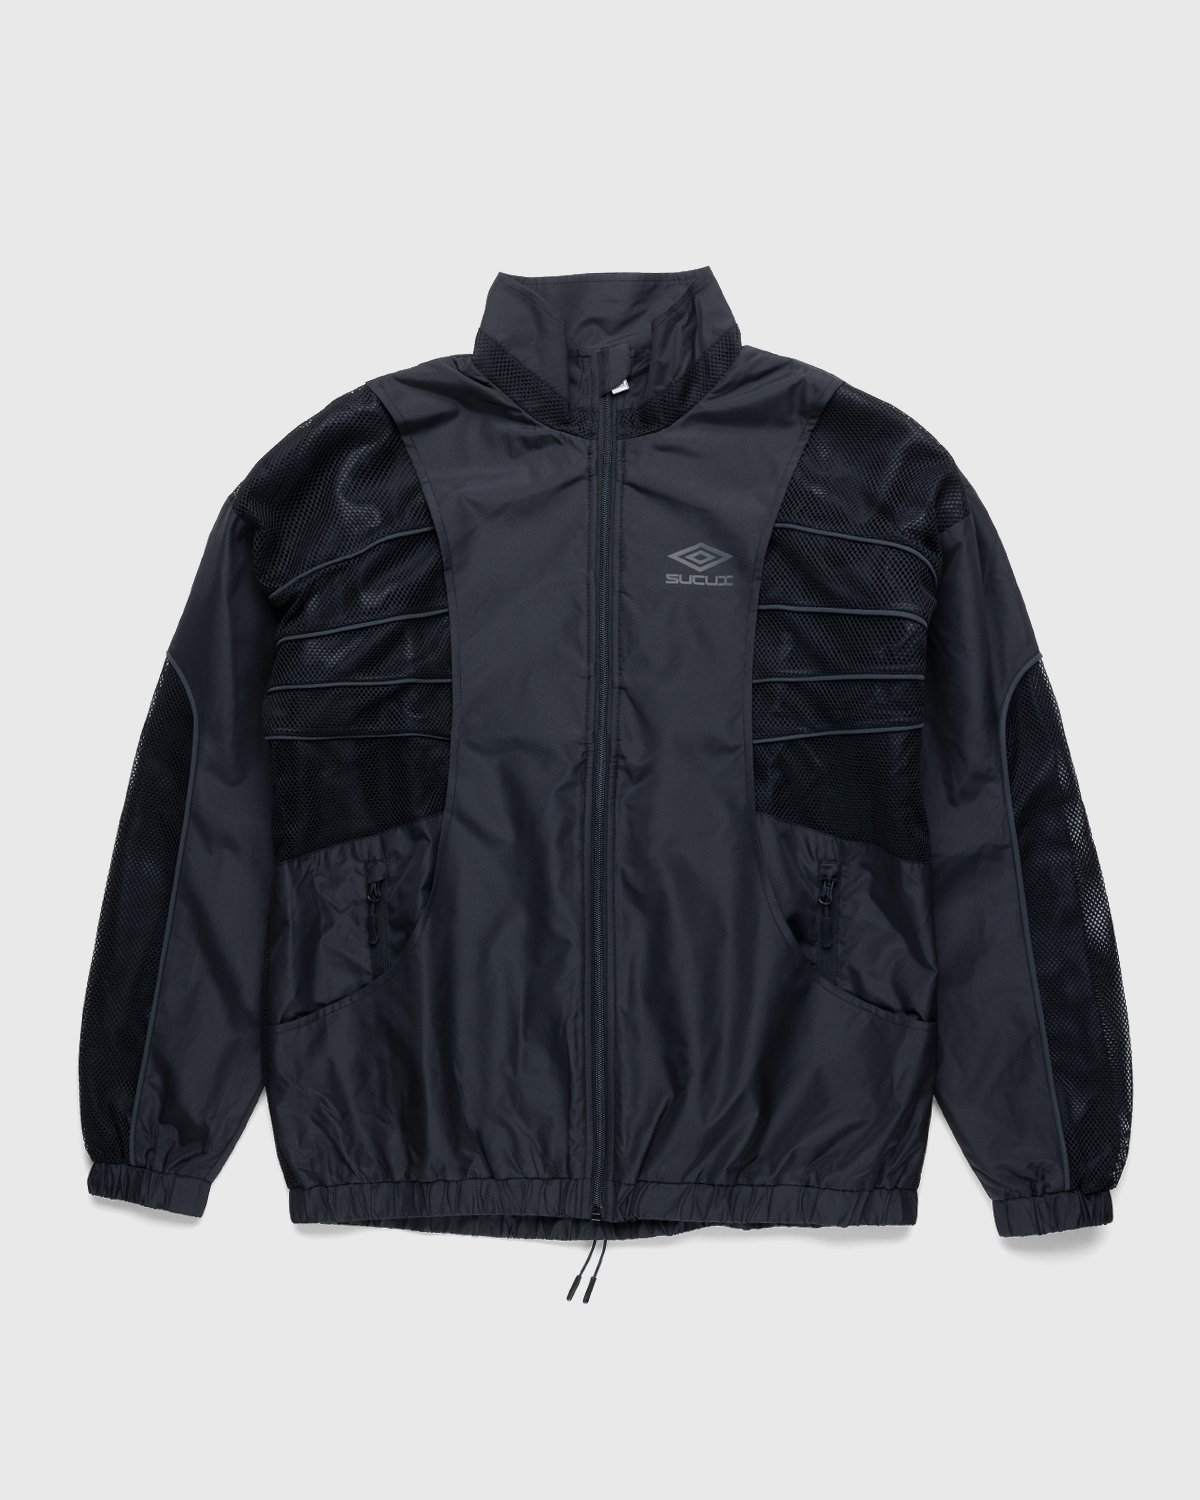 Umbro x Sucux - Zenomorph Jacket Black - Clothing - Black - Image 1